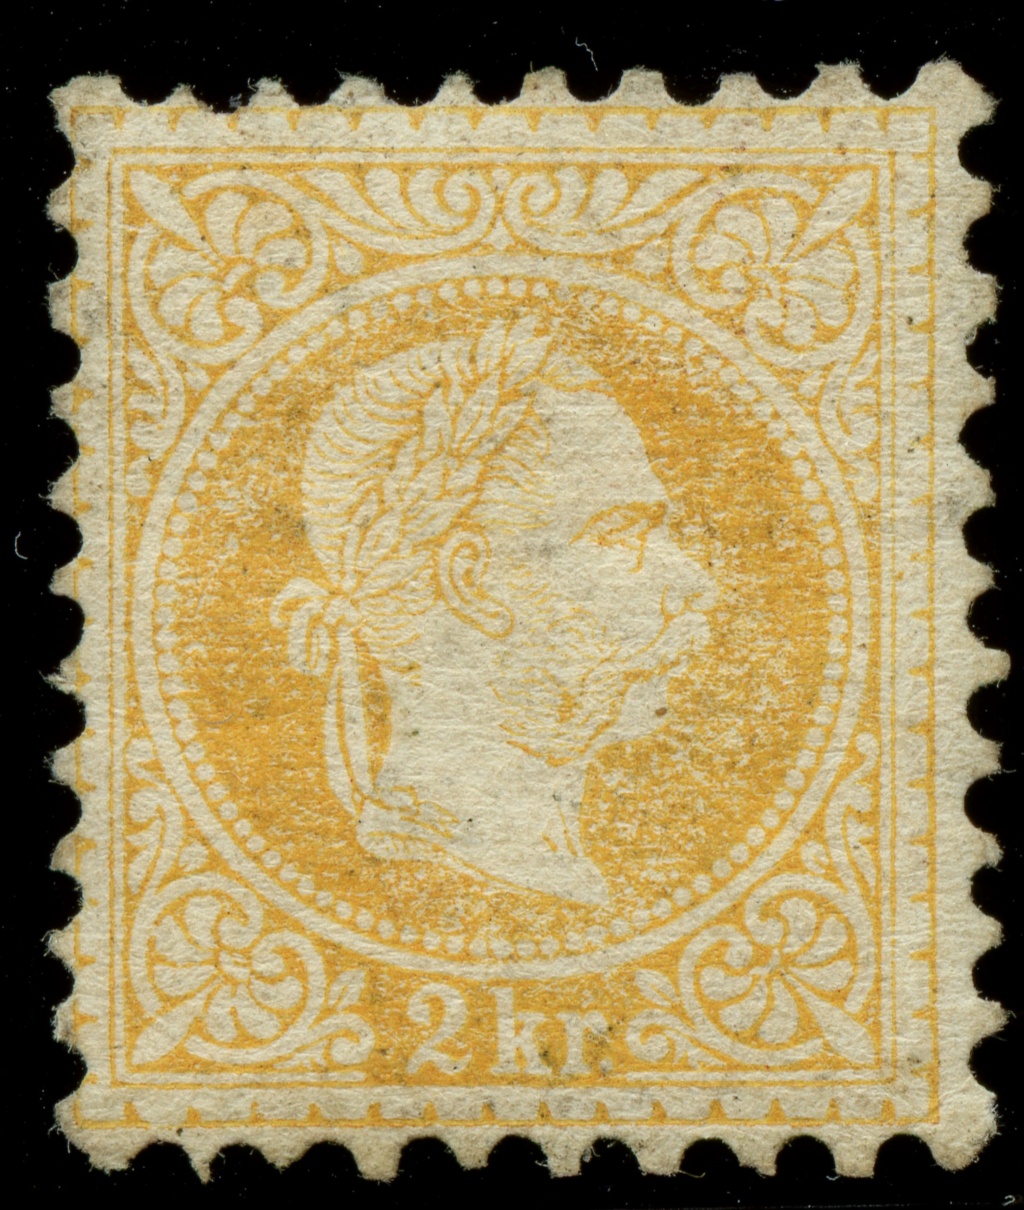 post - Freimarken-Ausgabe 1867 : Kopfbildnis Kaiser Franz Joseph I - Seite 23 Ank_3522